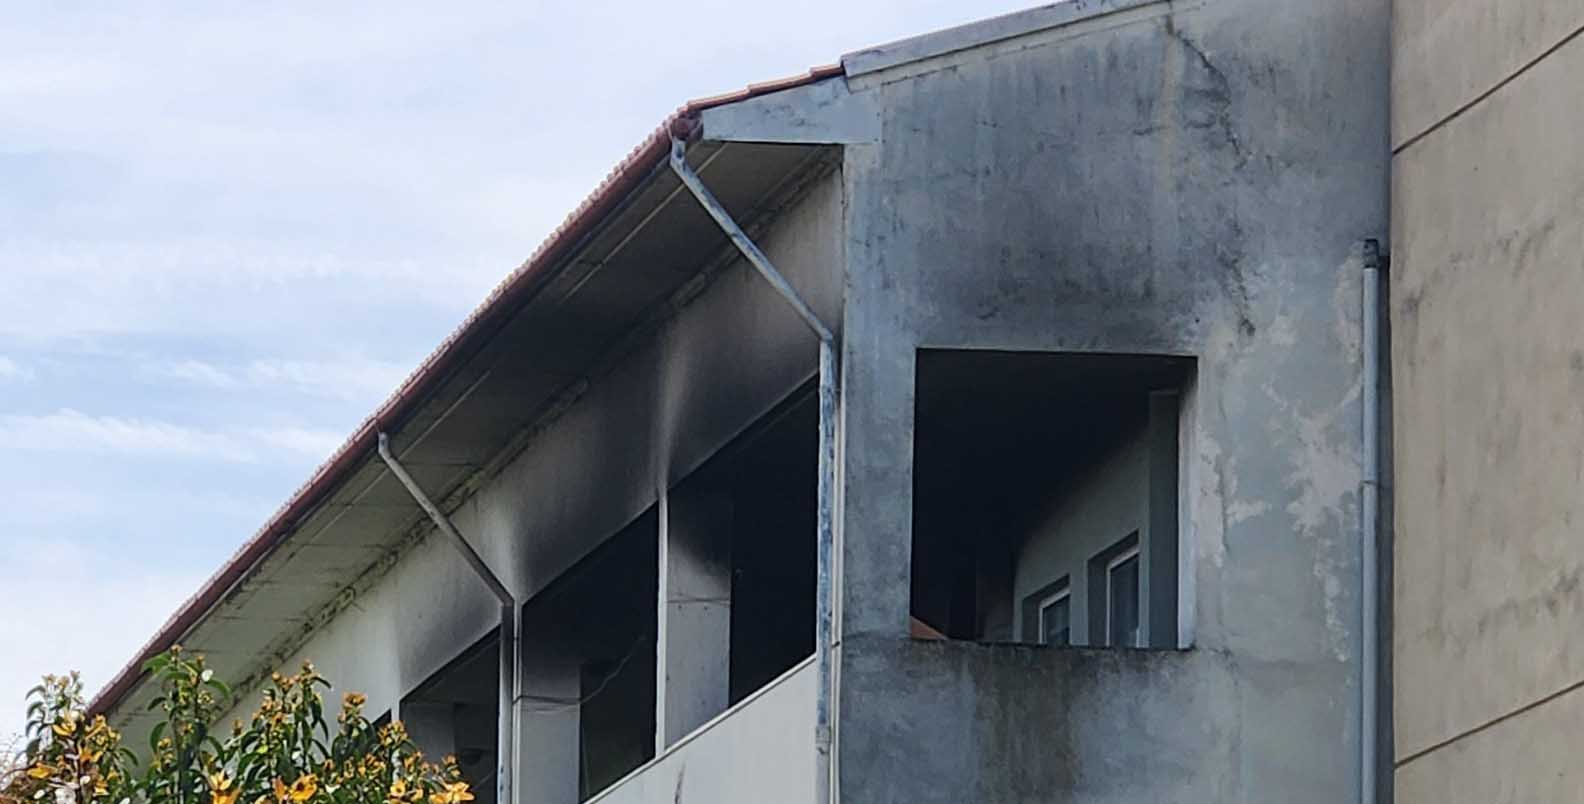 Σύλλογος Εστιακών: «Χωρίς την παρέμβασή μας θα υπήρχαν θύματα» στη φωτιά στις κατοικίες